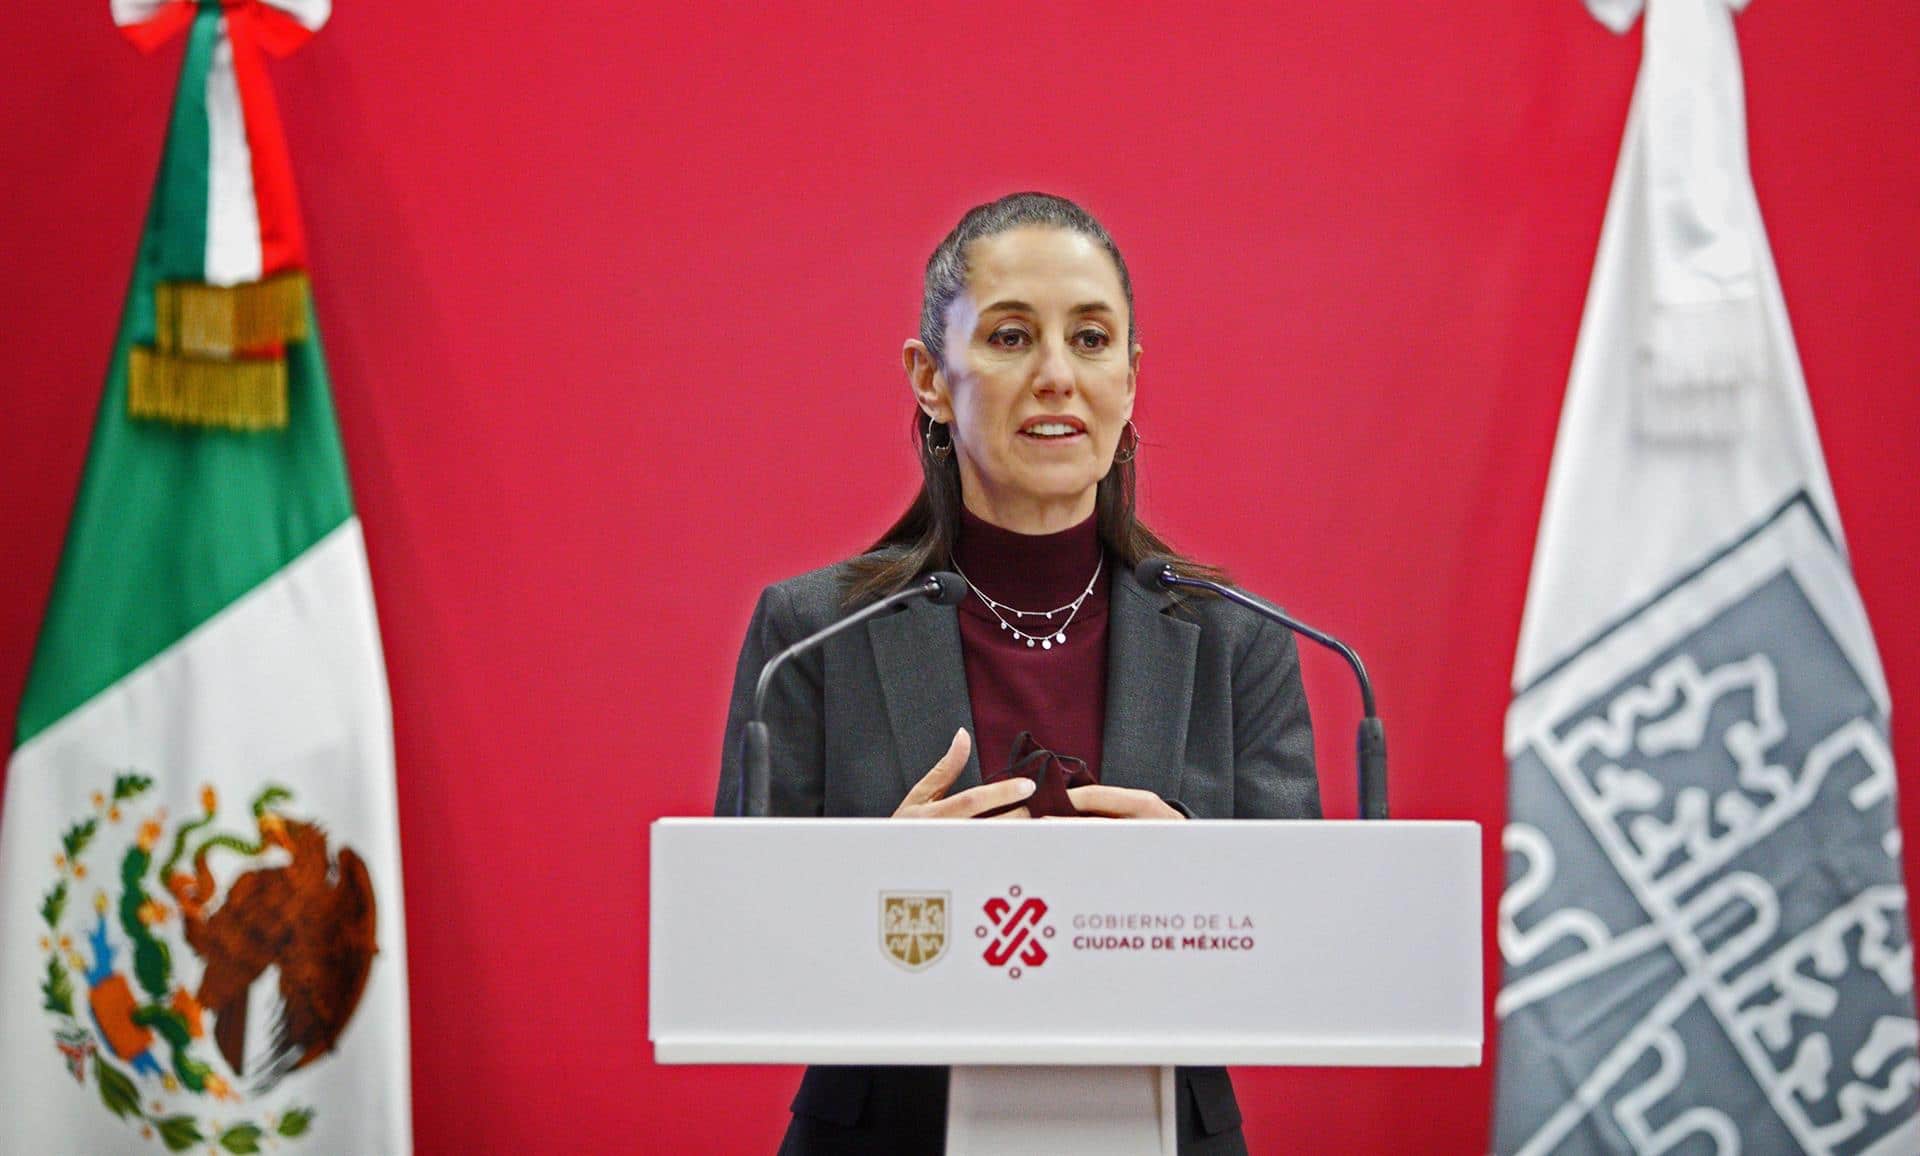 La jefa de gobierno de la CDMX, Claudia Sheinbaum, durante una conferencia de prensa el 13 de diciembre de 2021 (EFE)